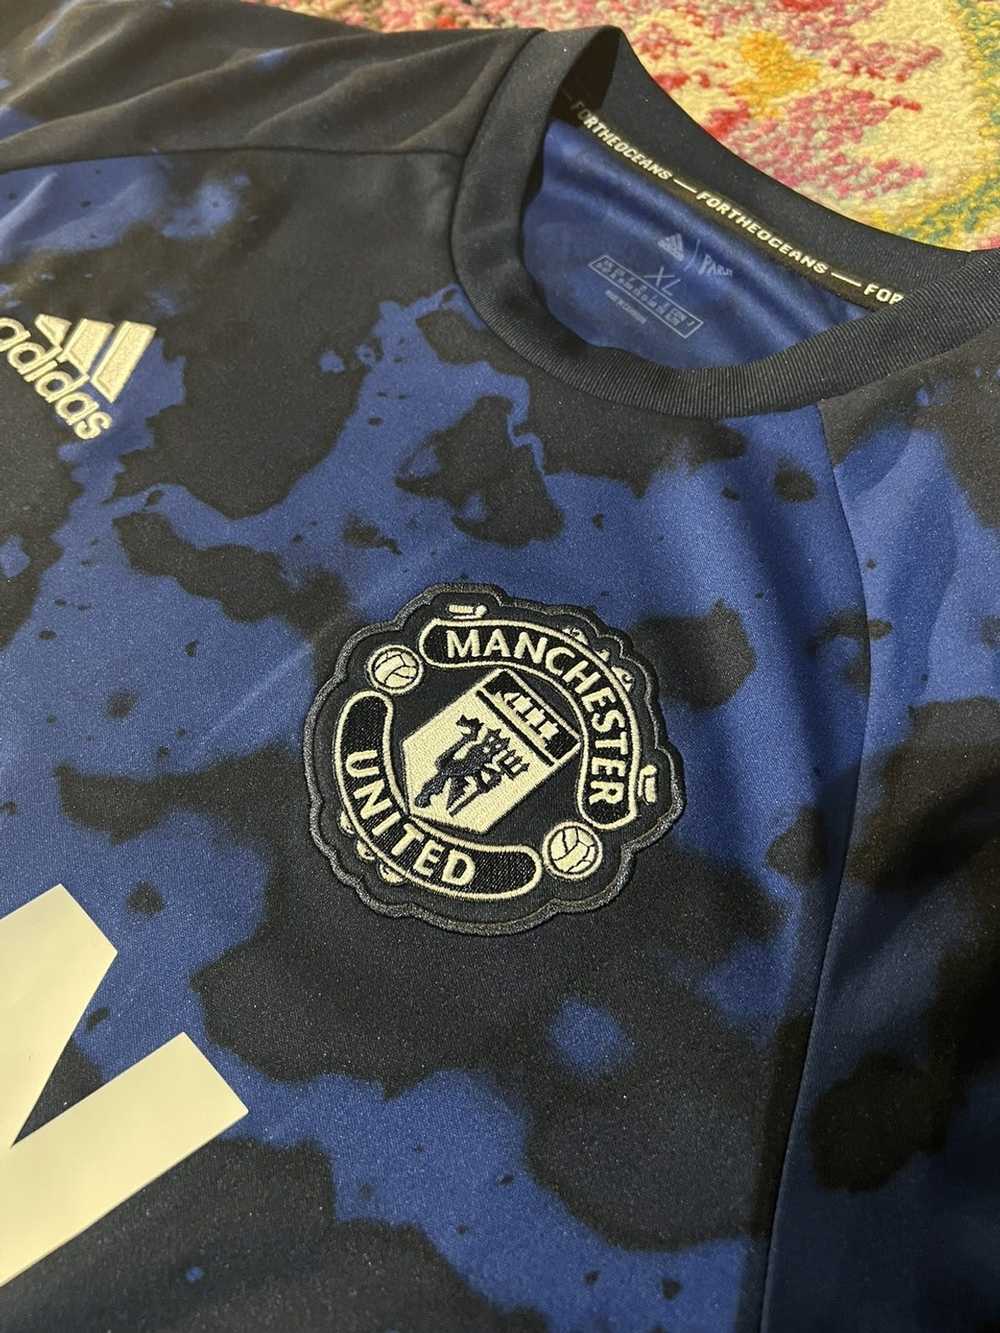 Retro Manchester United Adidas Shirt 2018 Revealed » The Kitman